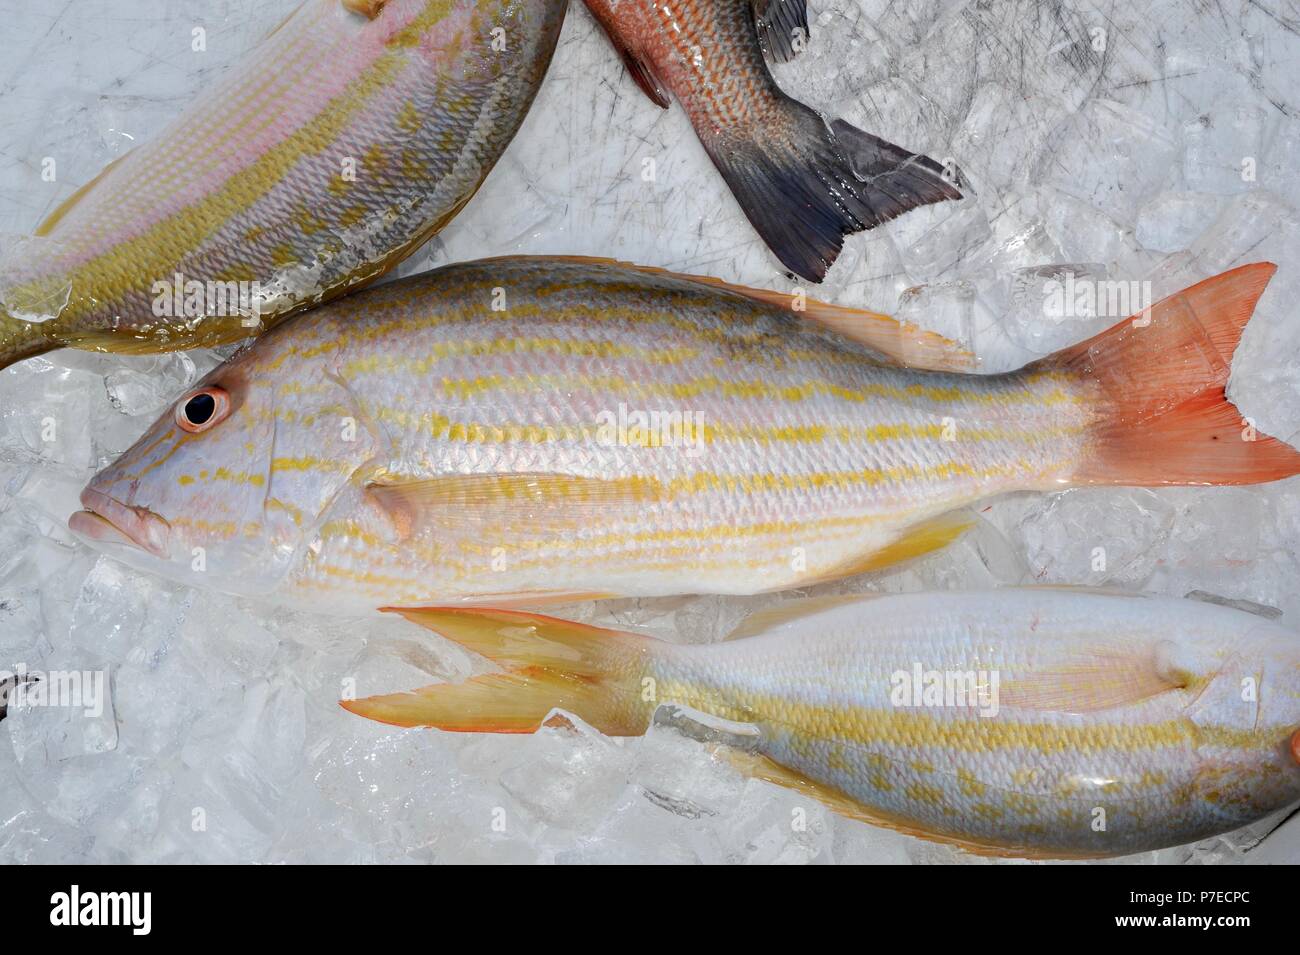 Frisch gefangen, Salzwasser Yellow Tail und red snapper Fisch auf Eis, Marathon Key, Florida, USA Stockfoto